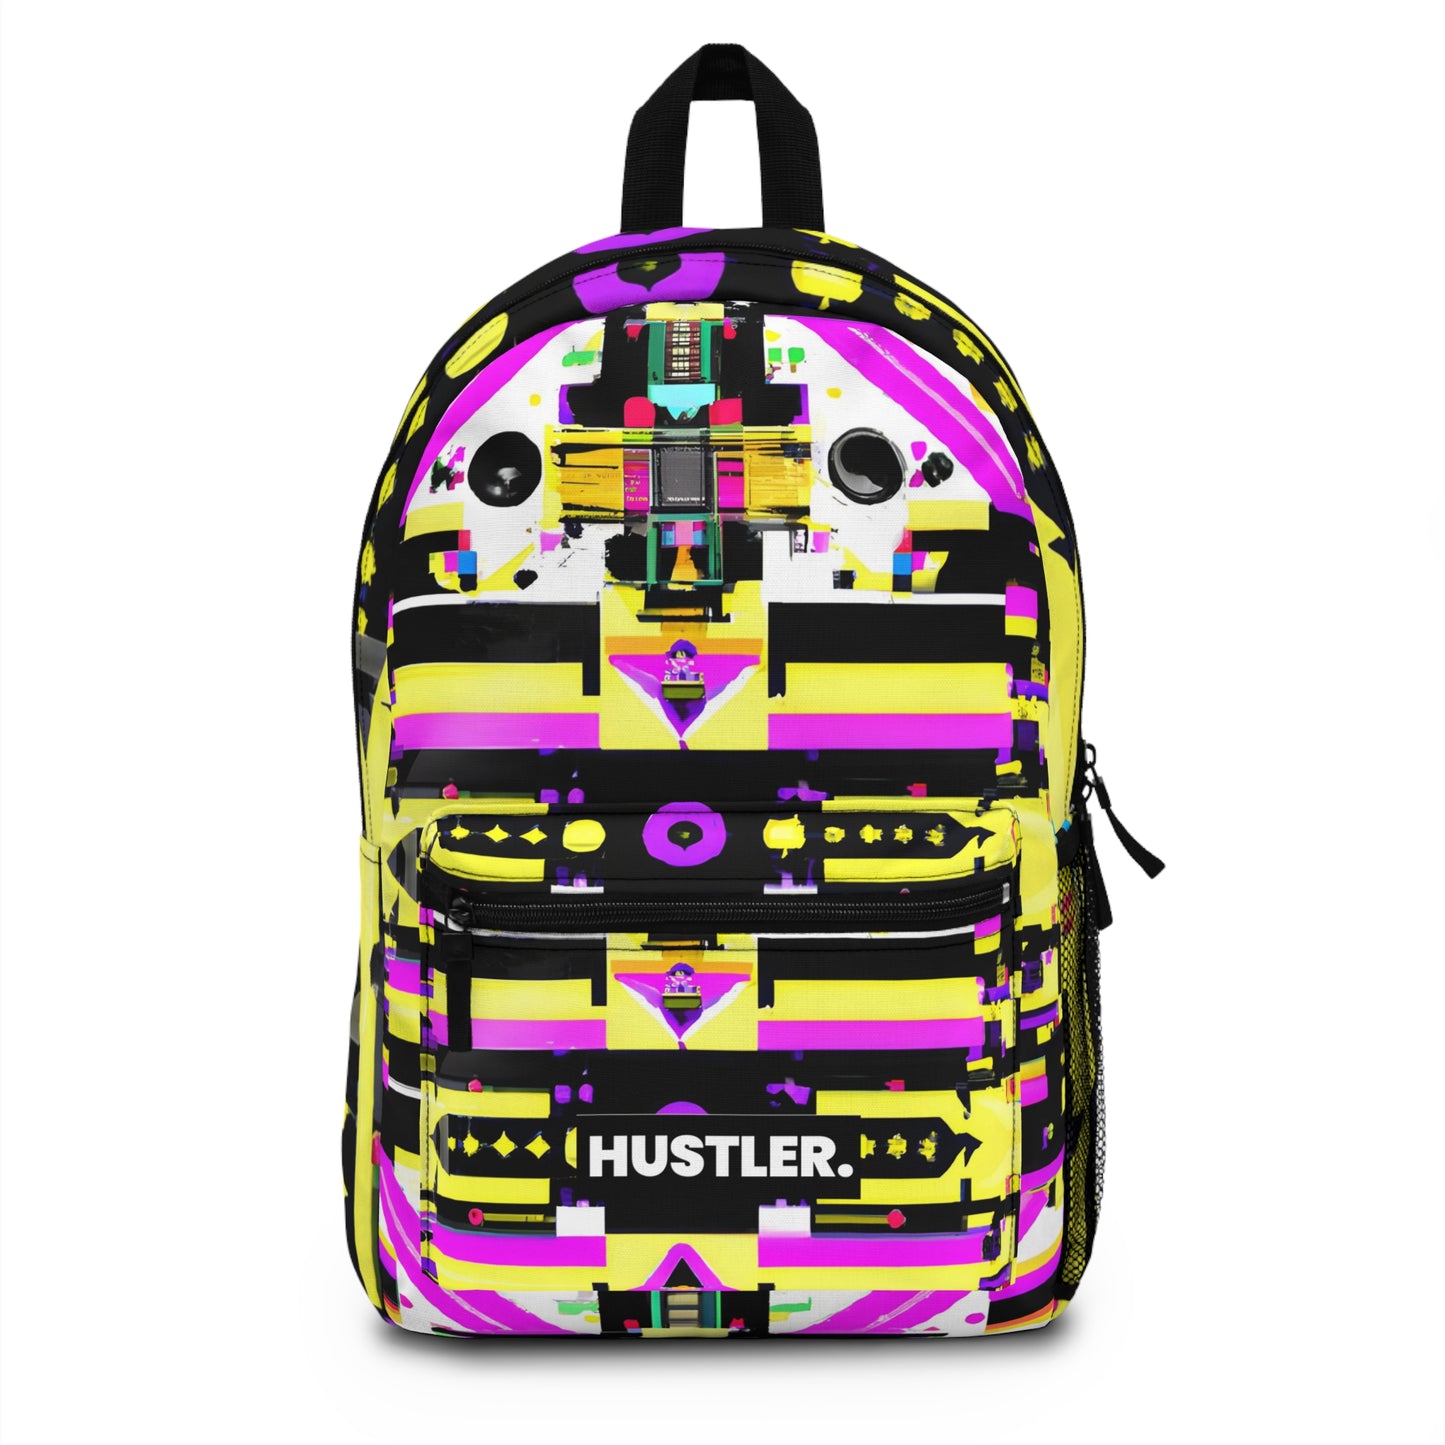 NovaVonStar - Hustler Backpack